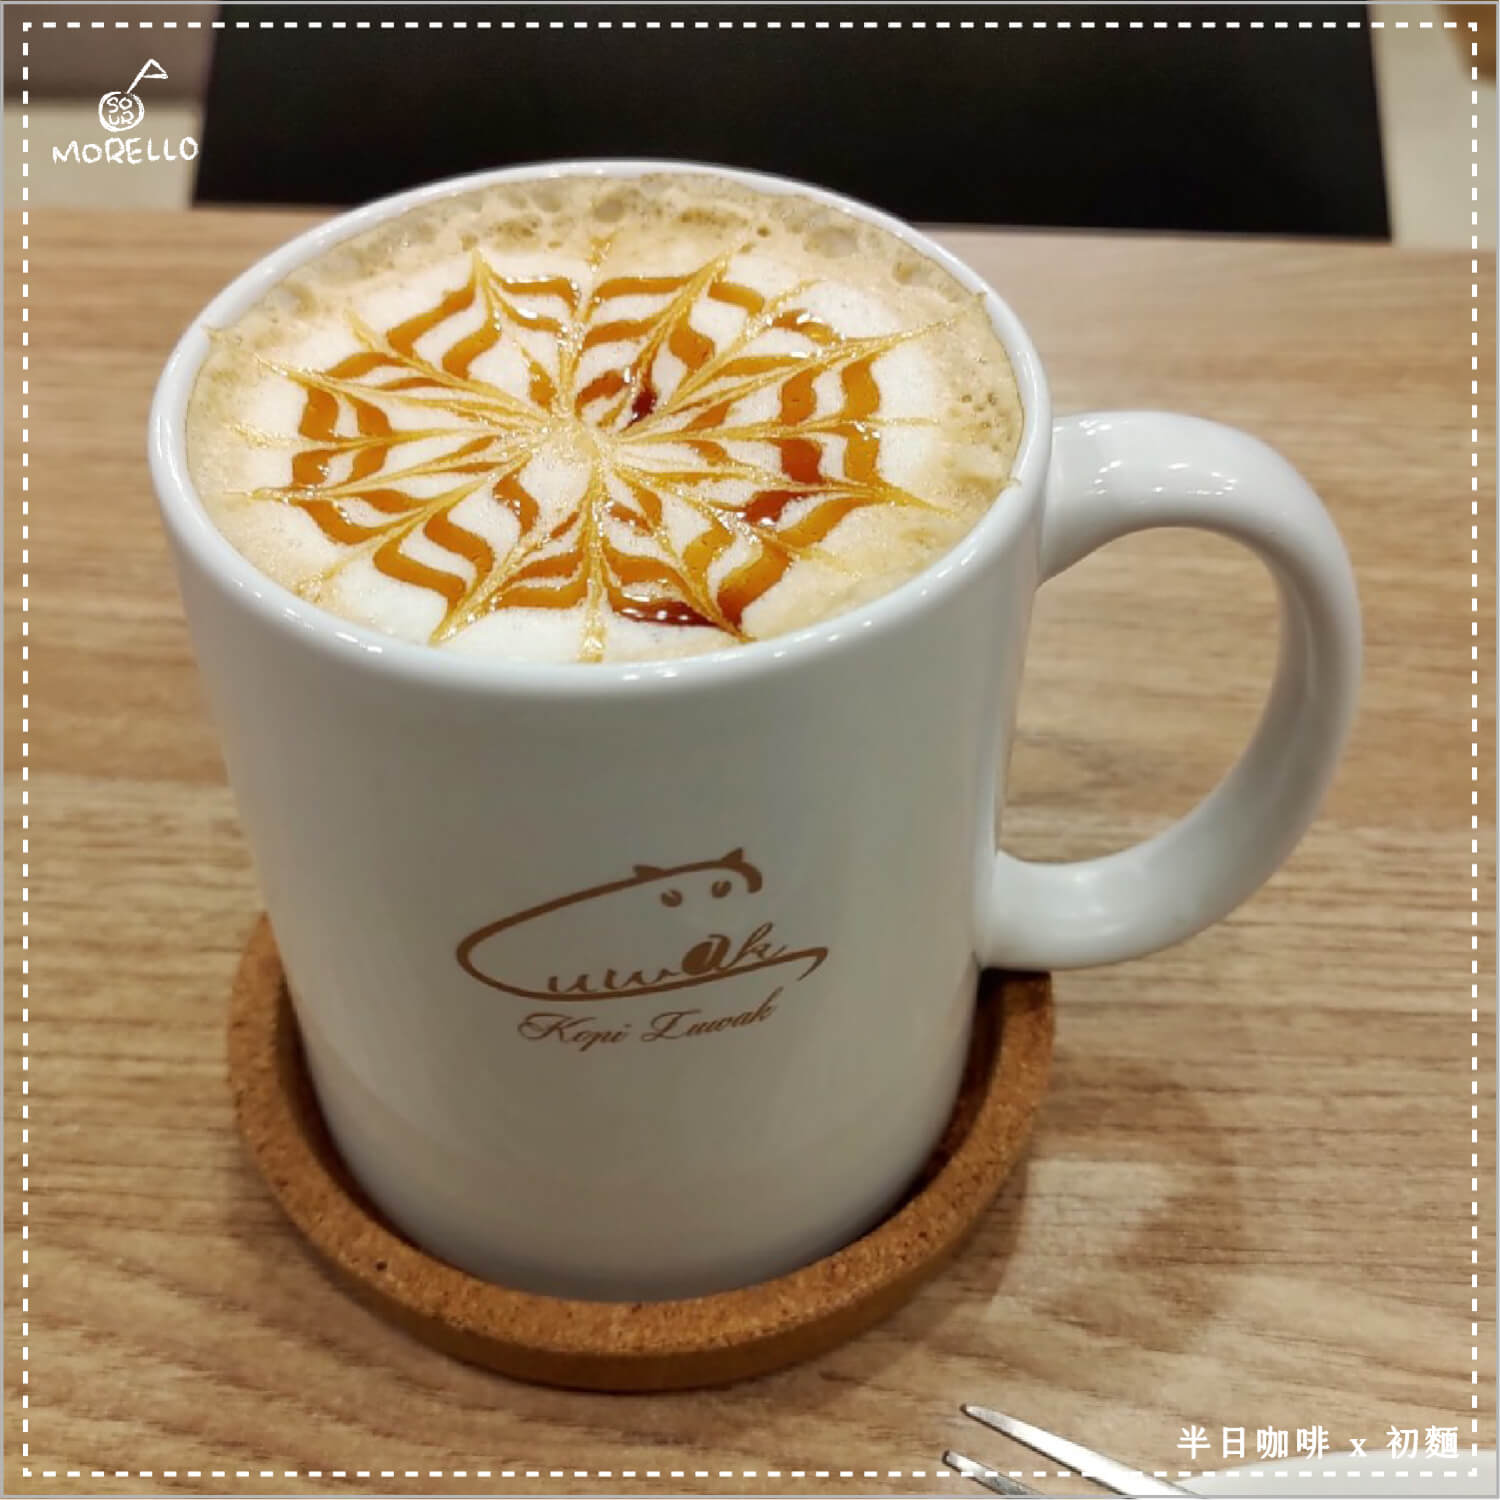 半日咖啡的拿鐵拉花非常特別，有別於常見的奶泡拉花，是用糖漿畫出來的咖啡雕花。